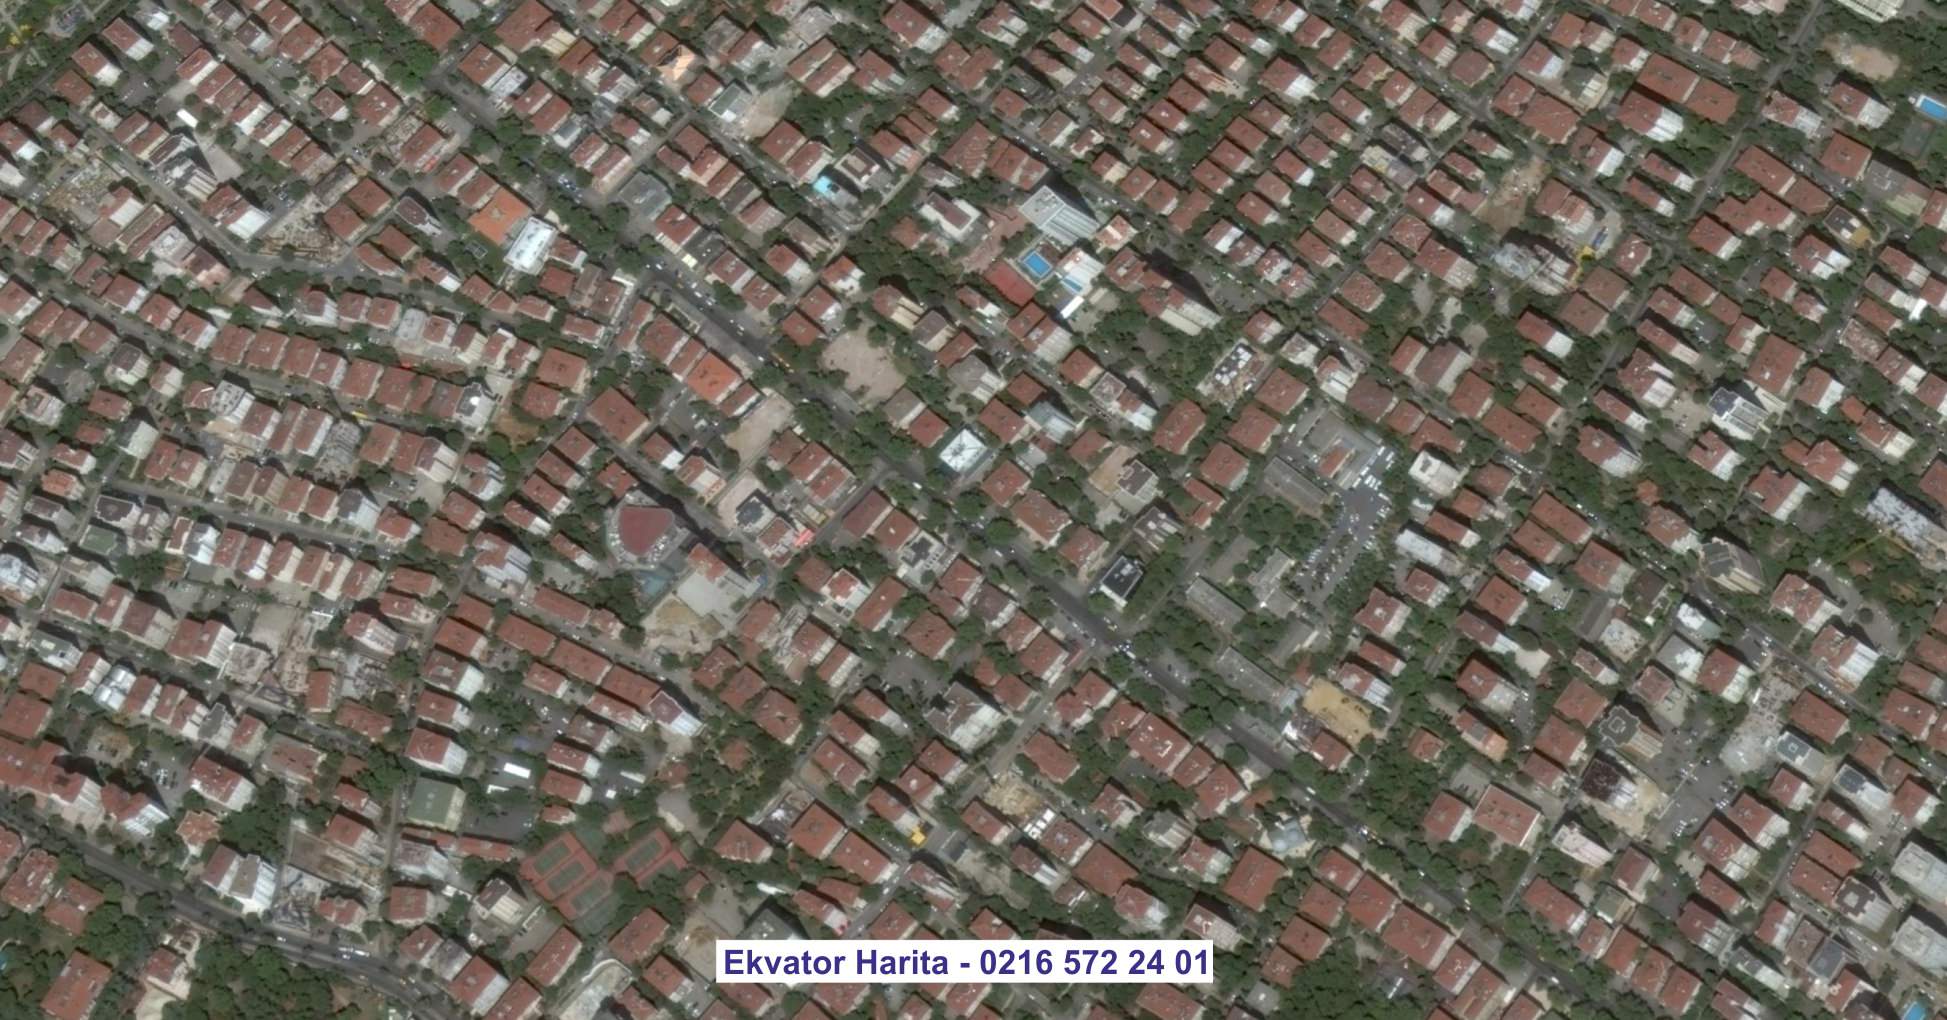 İzmir Uydu Görüntüsü Örnek Fotoğrafı